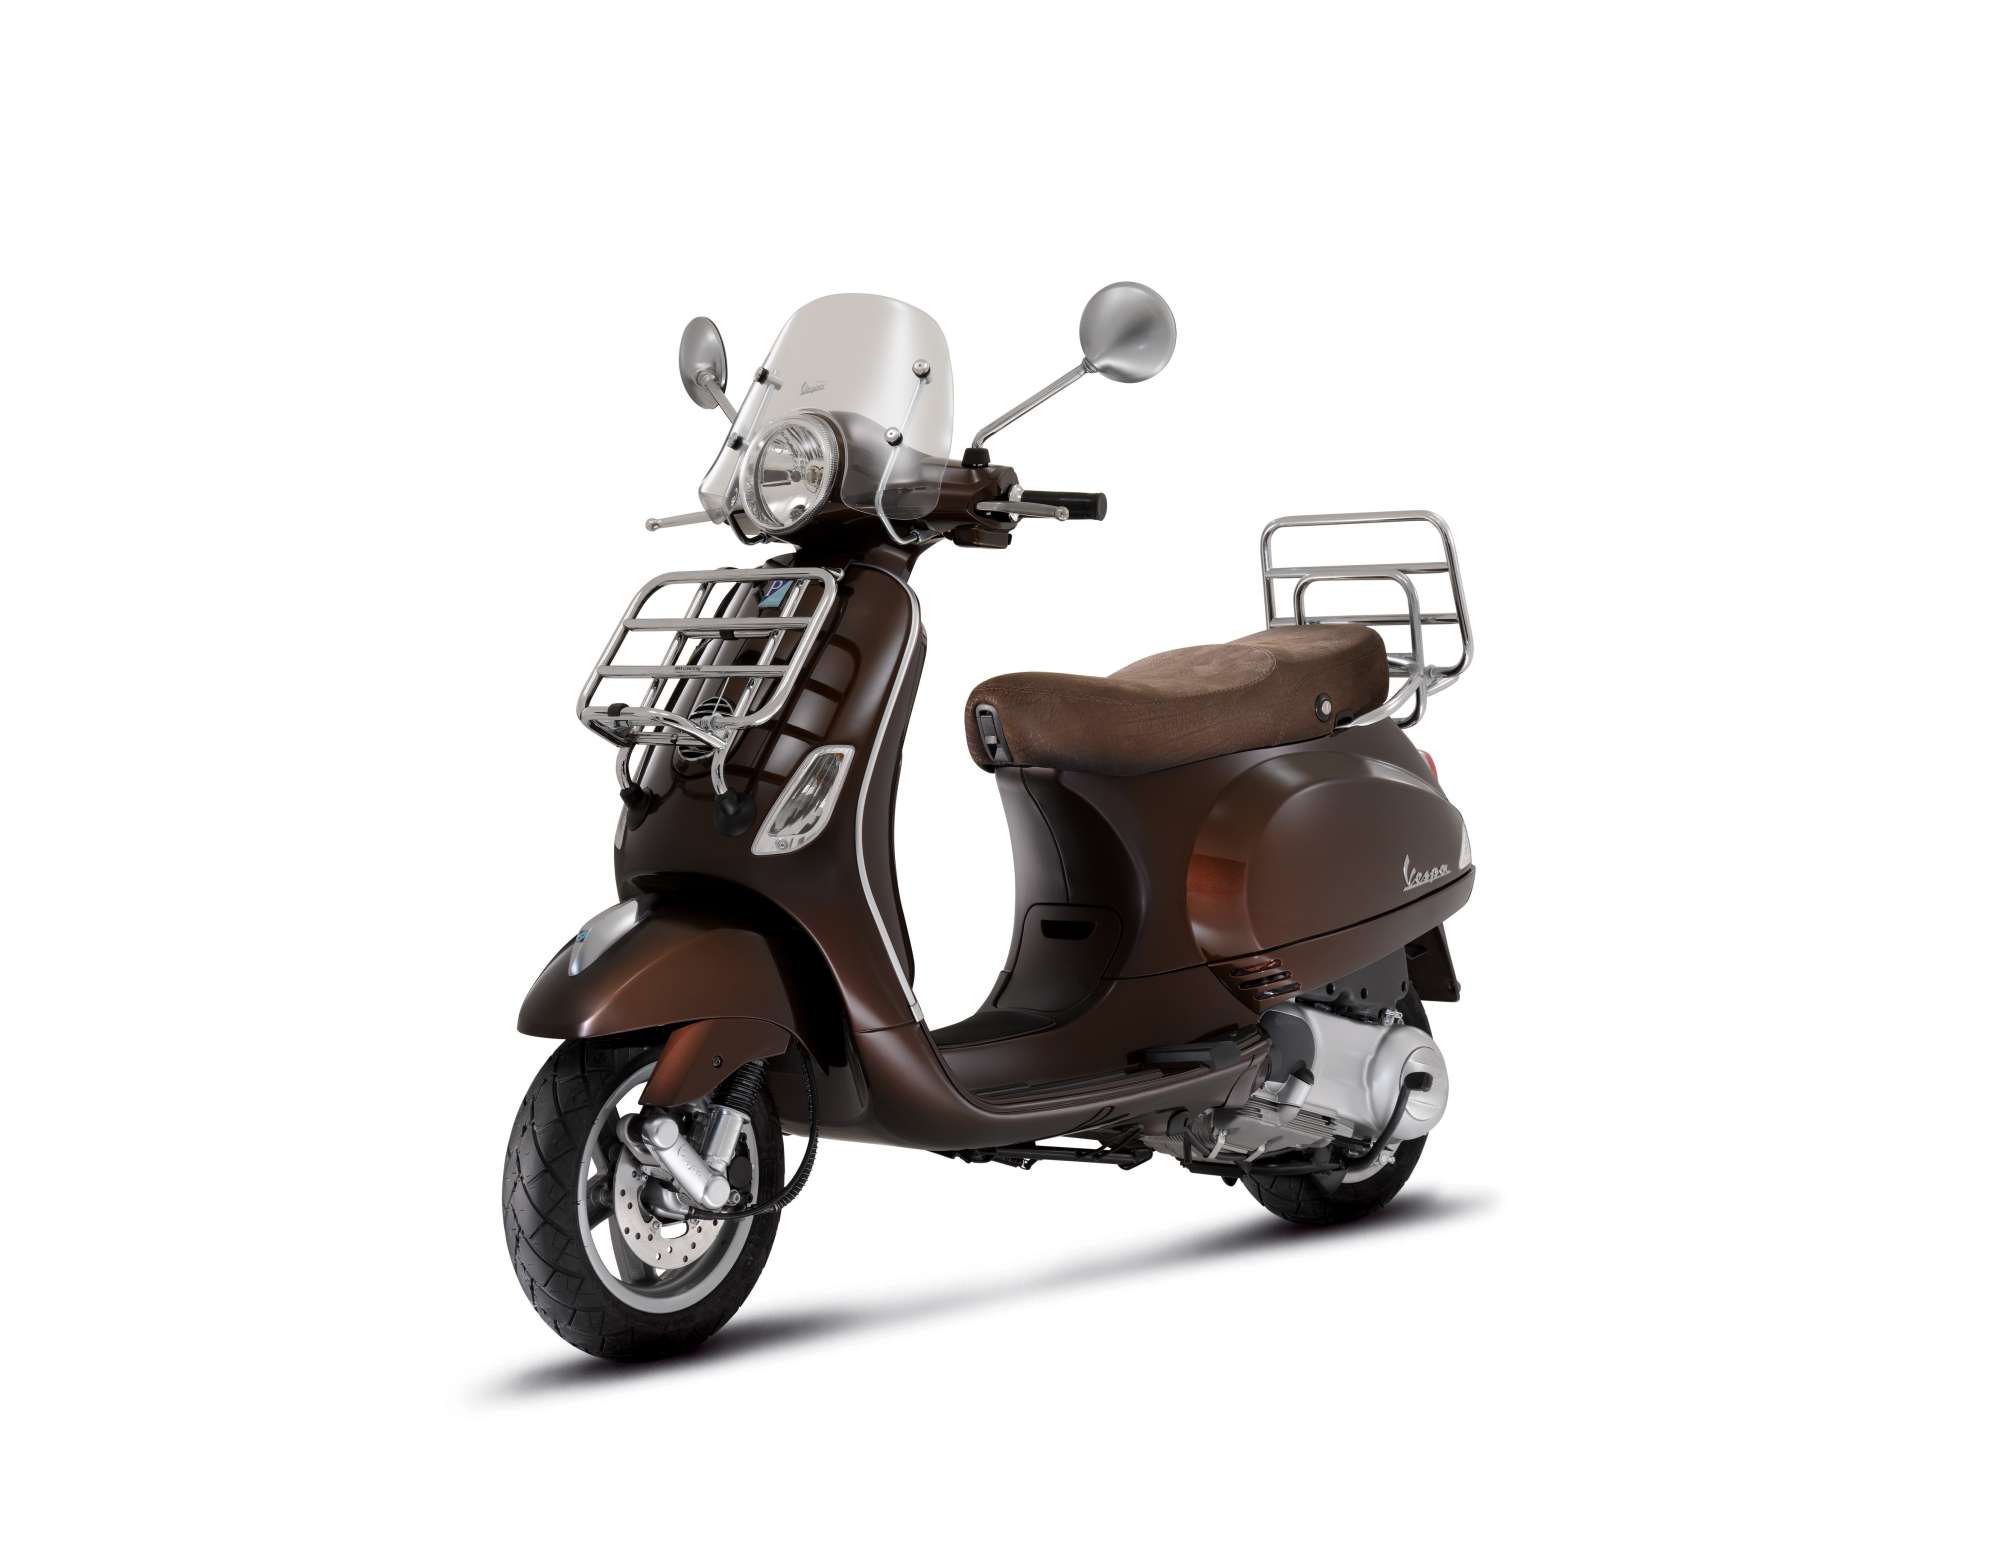 Gebrauchte und neue Vespa LX 50 2T Touring Motorräder kaufen